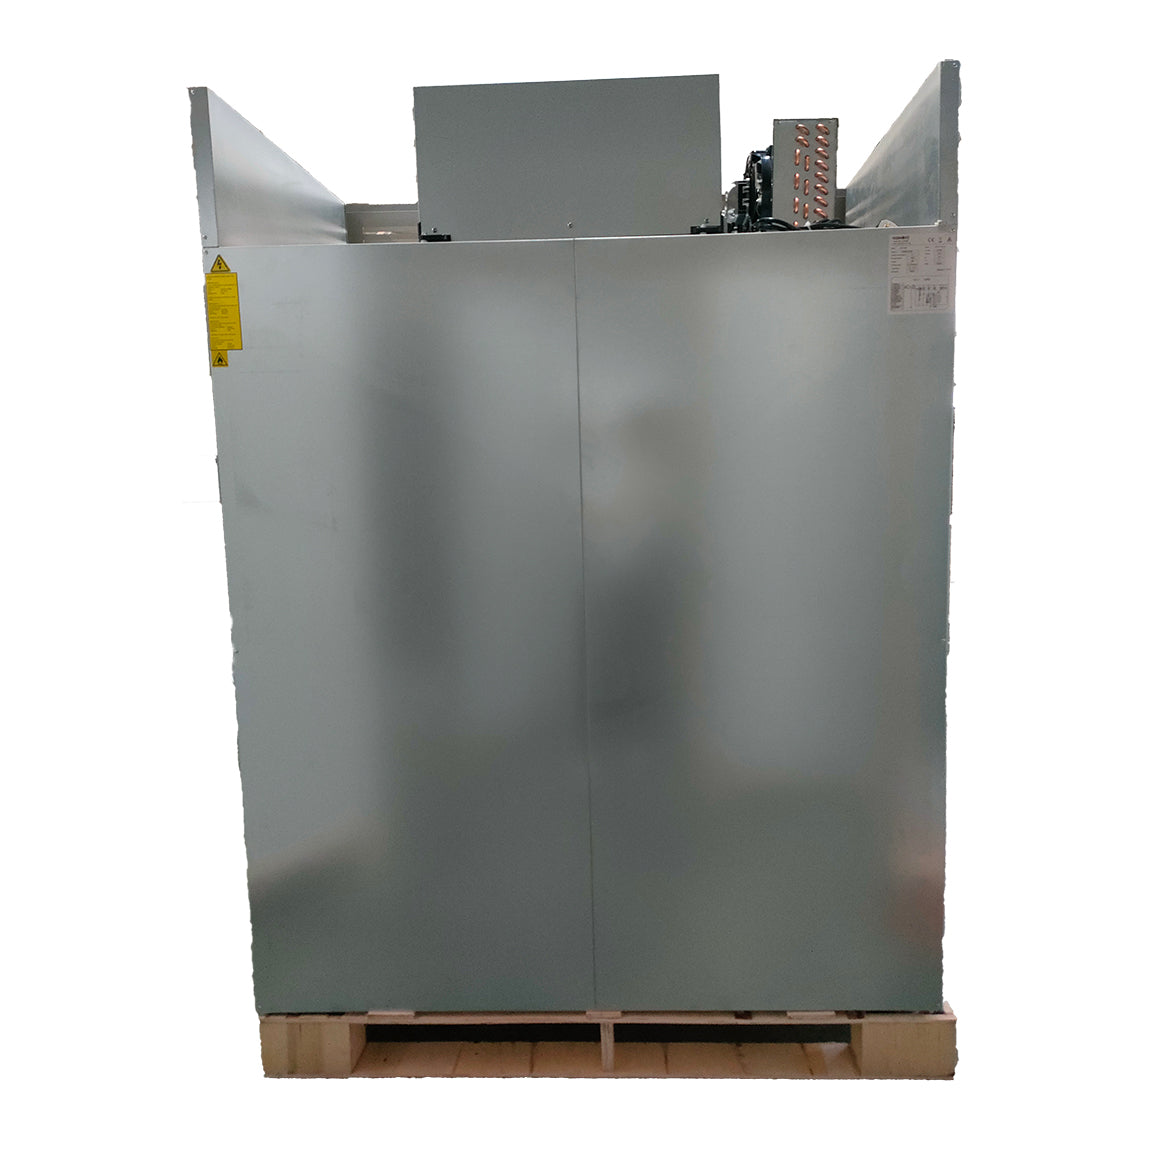 221004 - Upright Double Freezer - 1375L (GN1410BT)